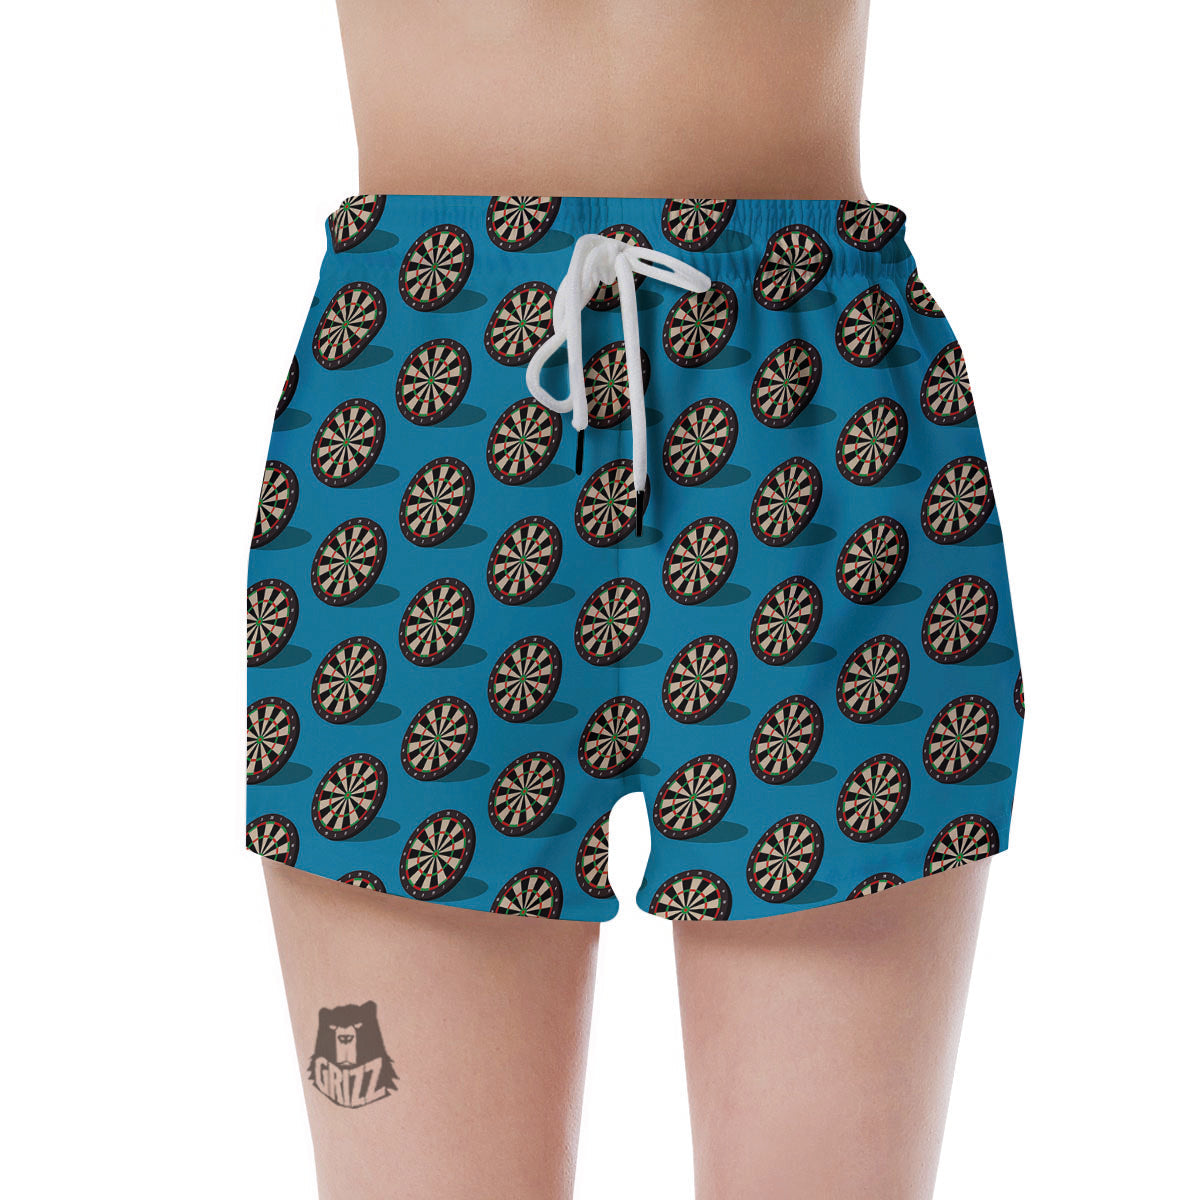 Printed Shorts Womens : Target